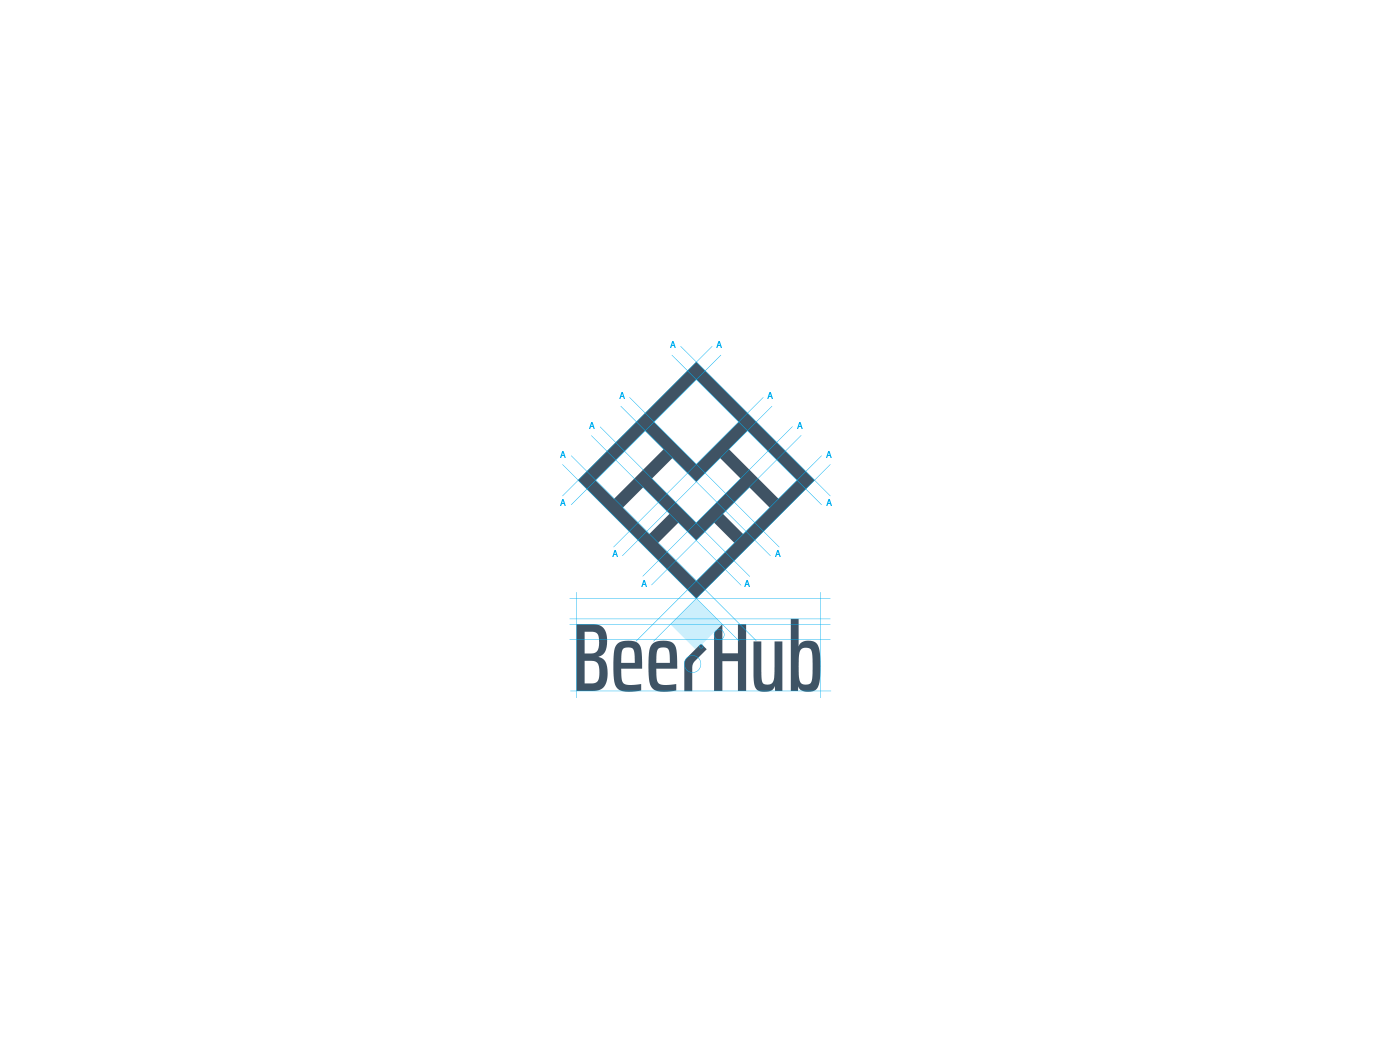 craft beer beer brewery Import logo branding  redesign